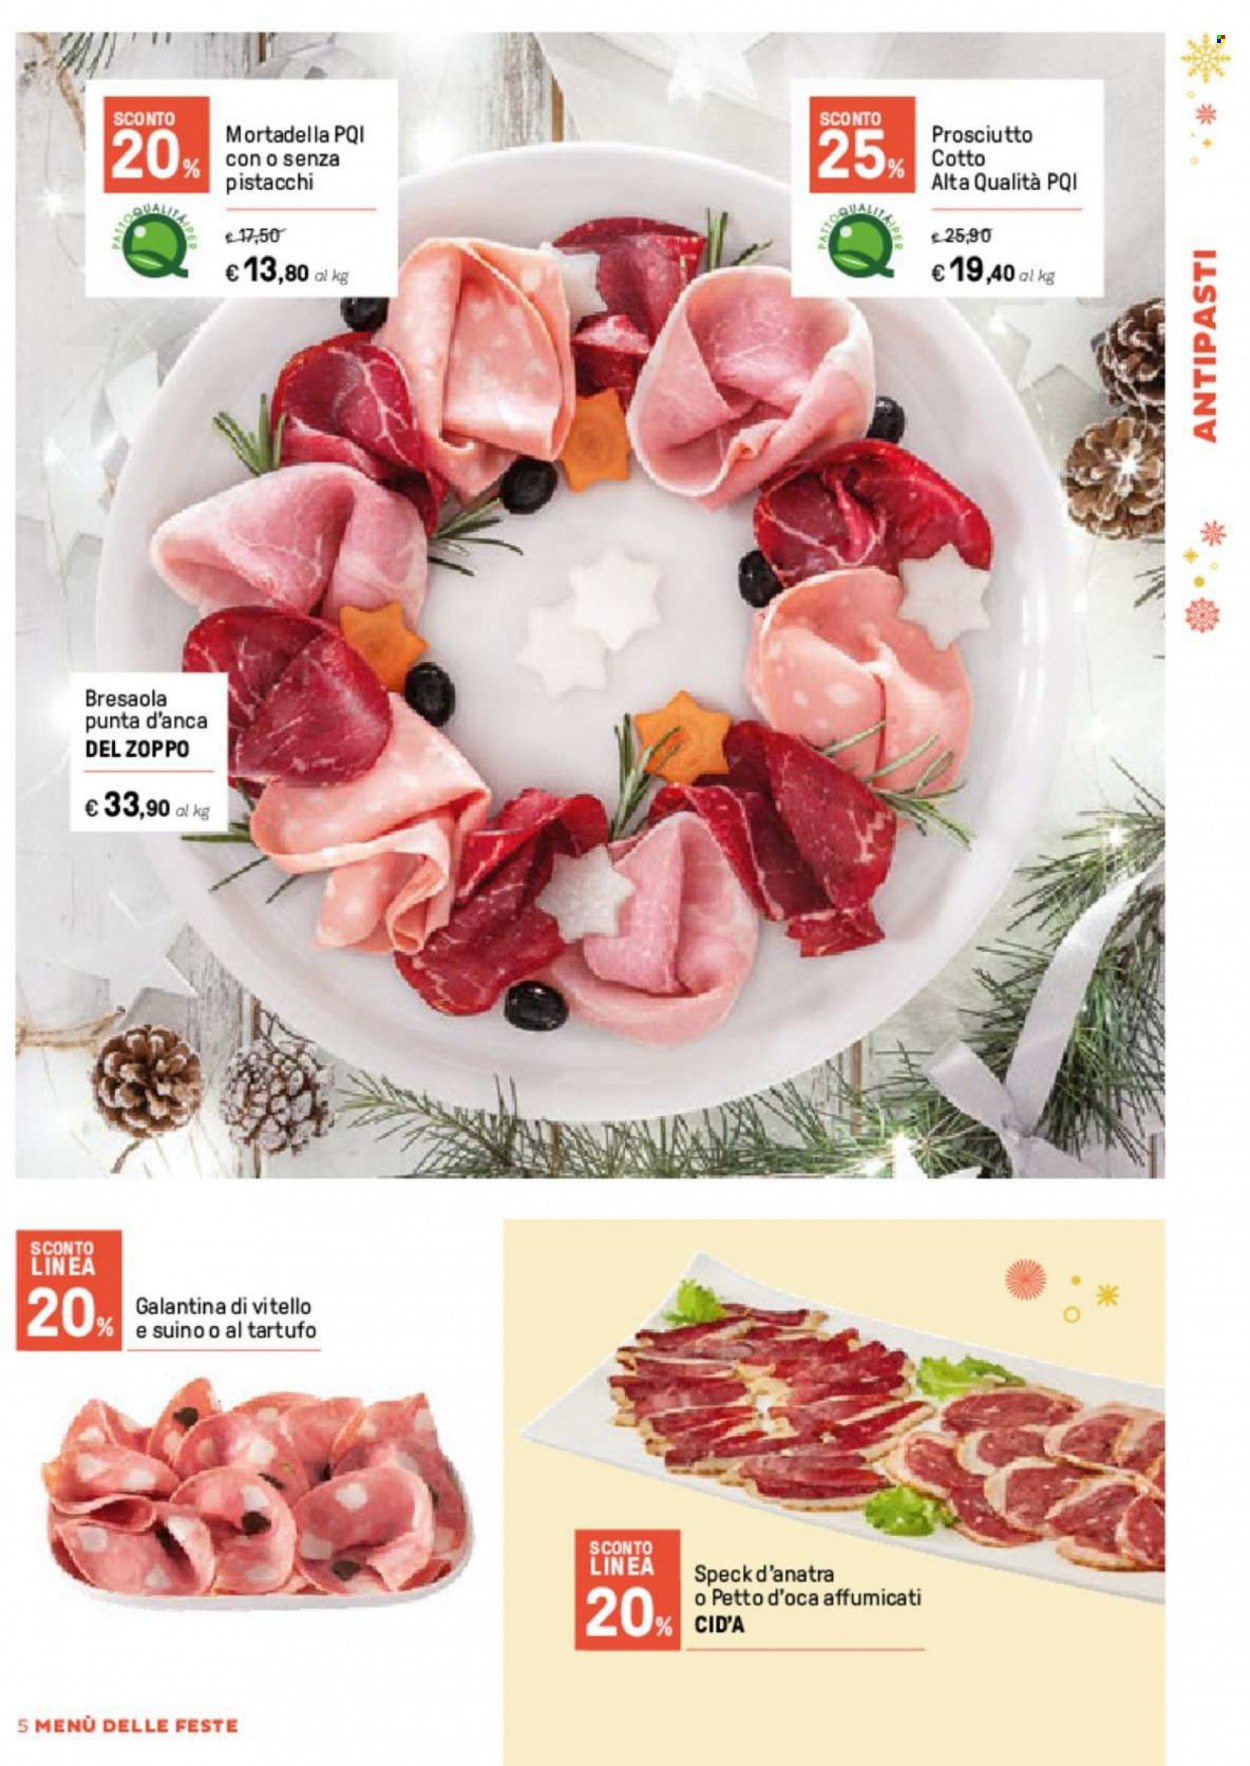 thumbnail - Volantino Iper, La grande i - 5/12/2022 - 31/12/2022 - Prodotti in offerta - anatra, vitello, bresaola, speck, prosciutto cotto, mortadella. Pagina 5.